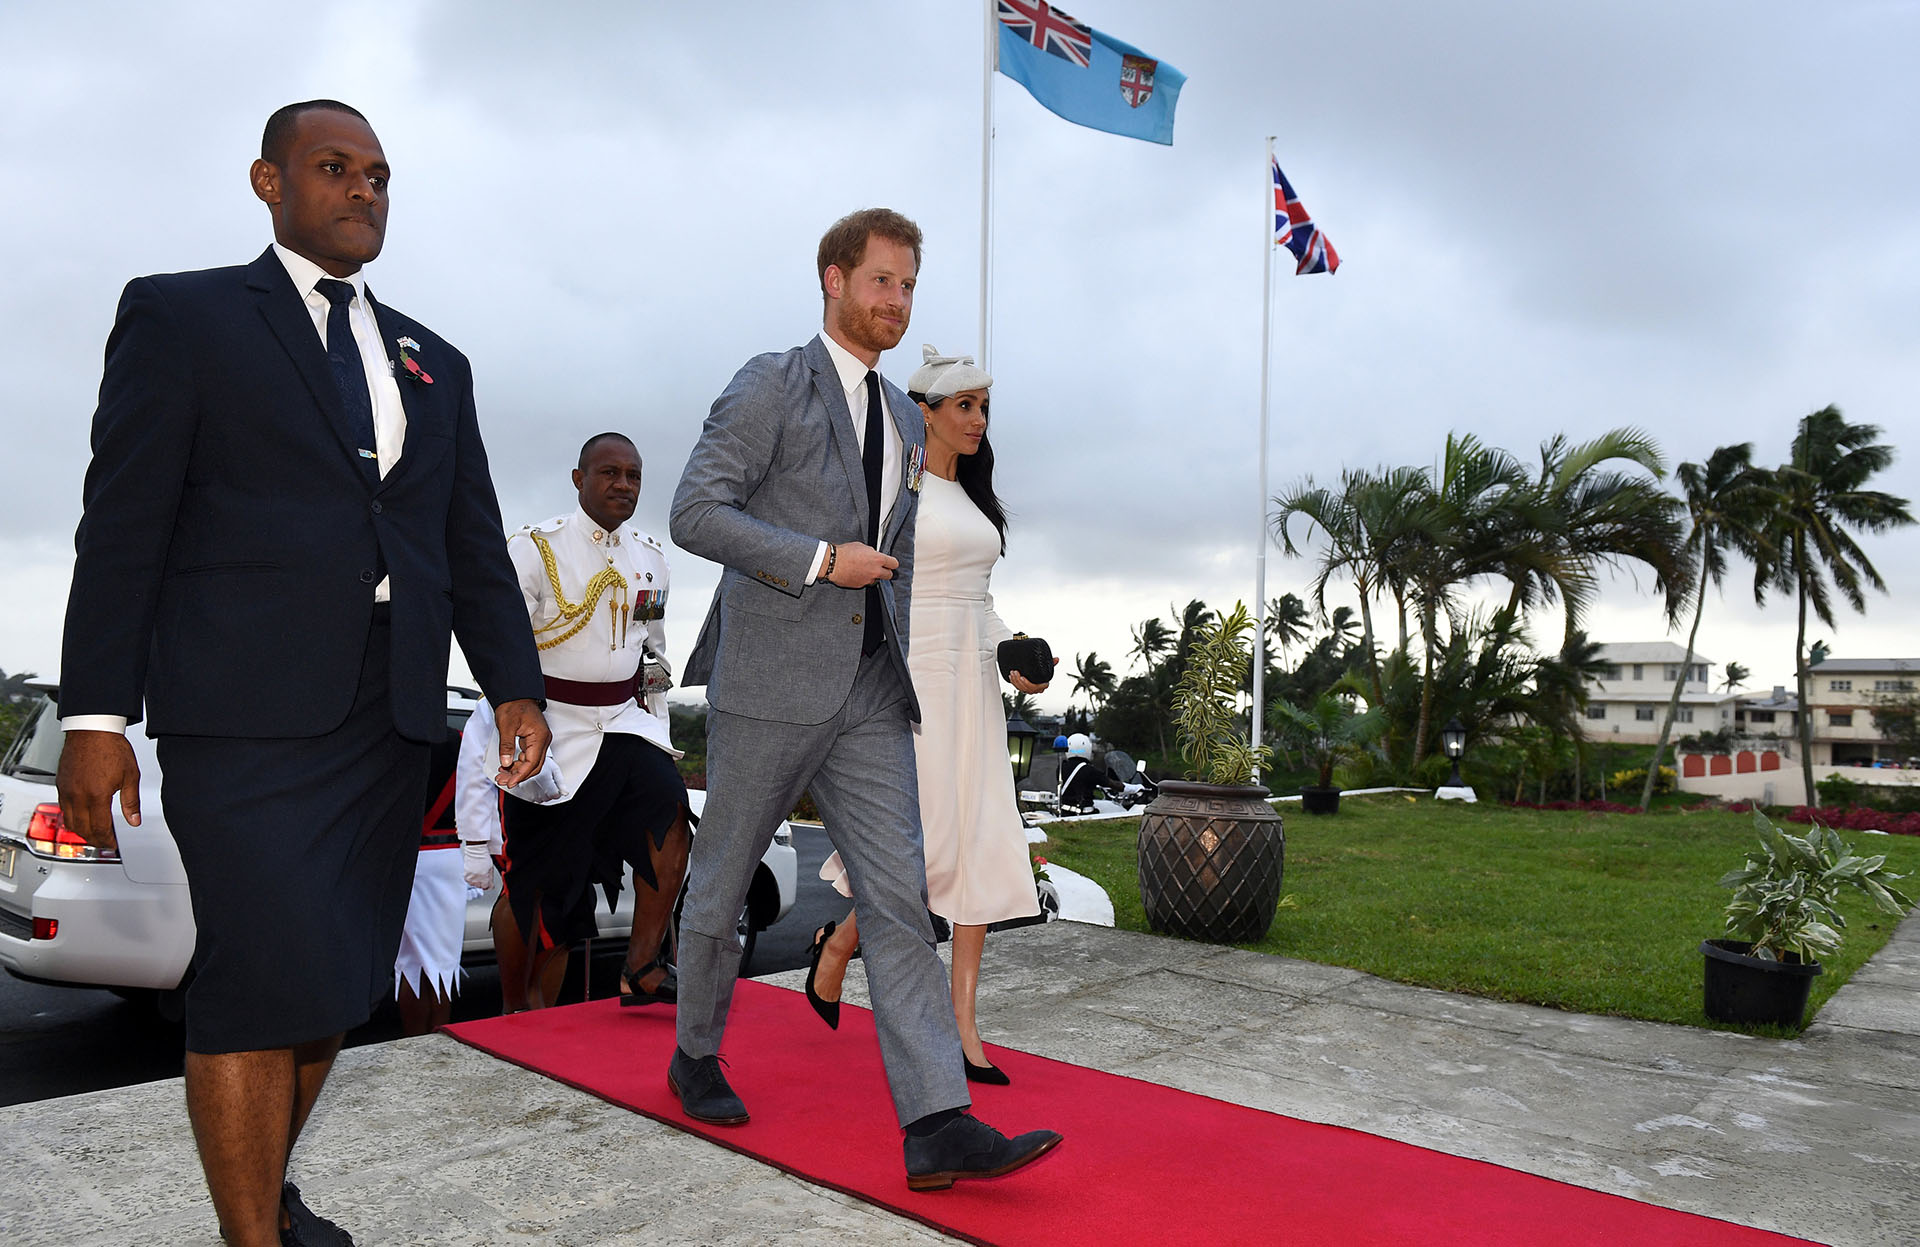 El Presidente de Fiji, Jioji Konrote, recibe en Suva, Fiji, al Príncipe Harry y a Meghan Markle el 23 de octubre de 2018 (Foto de archivo, Andrew Parsons/Pool vía REUTERS)